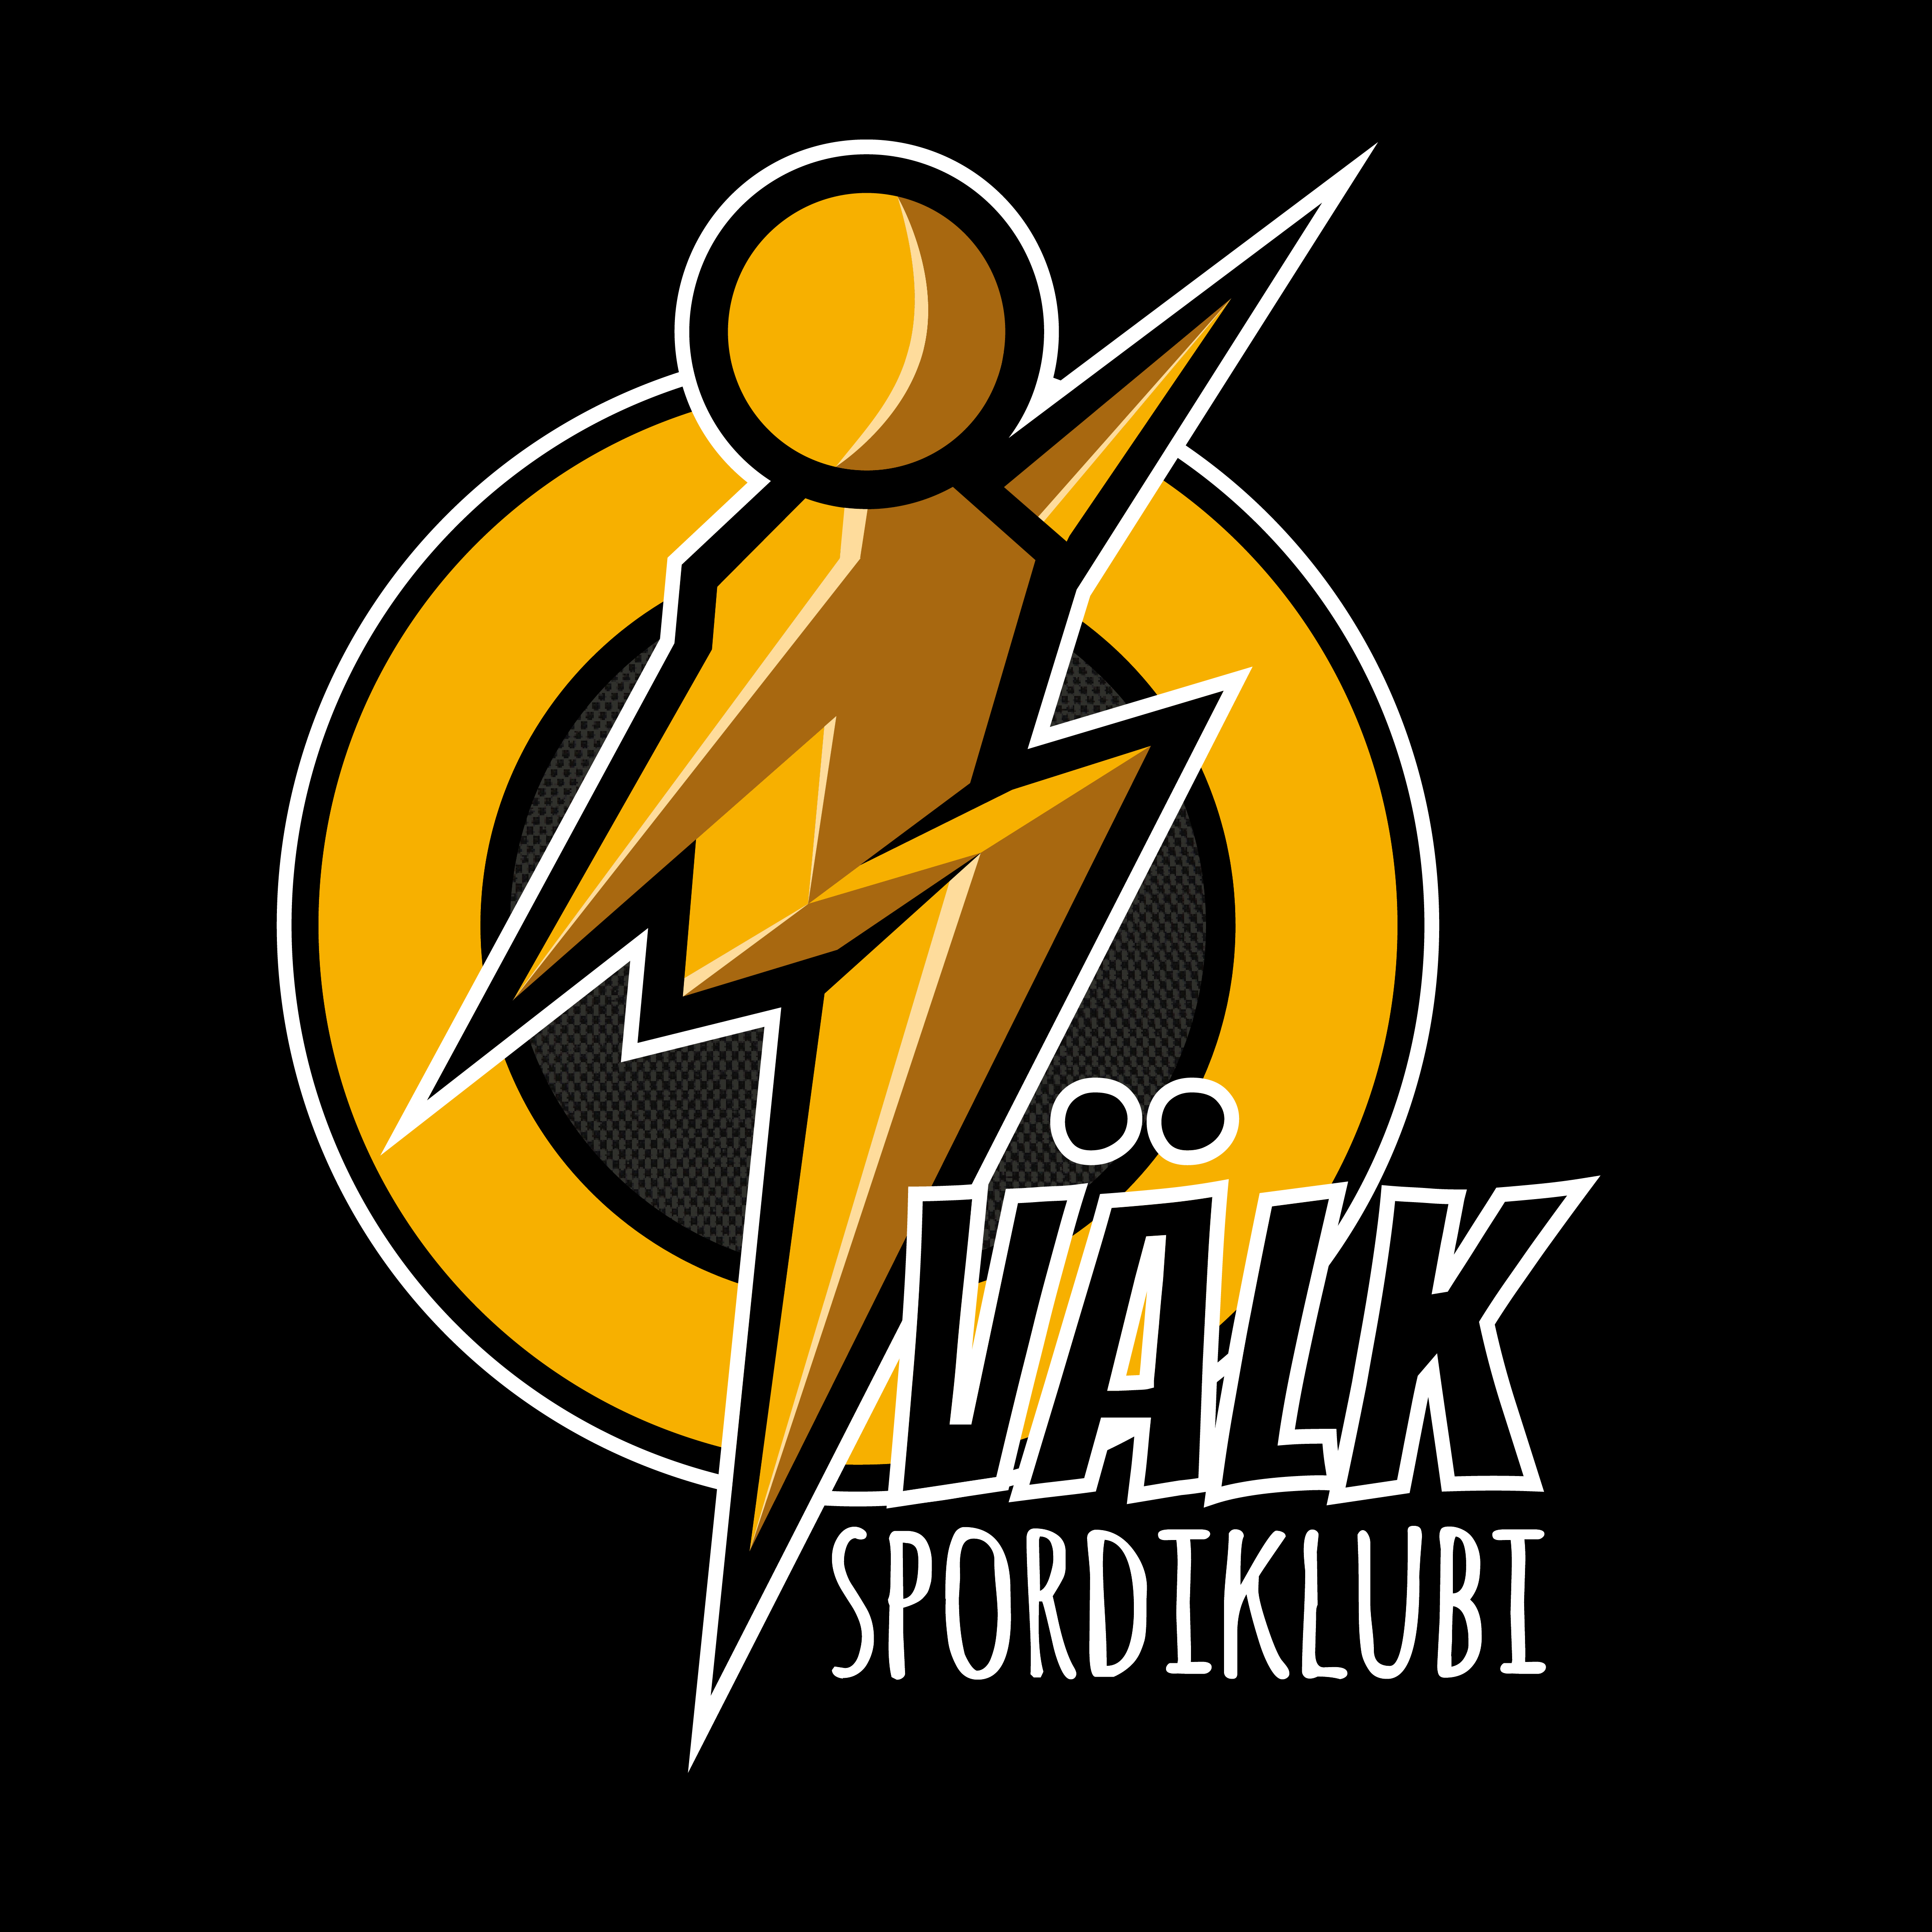 Spordiklubi Välk logo